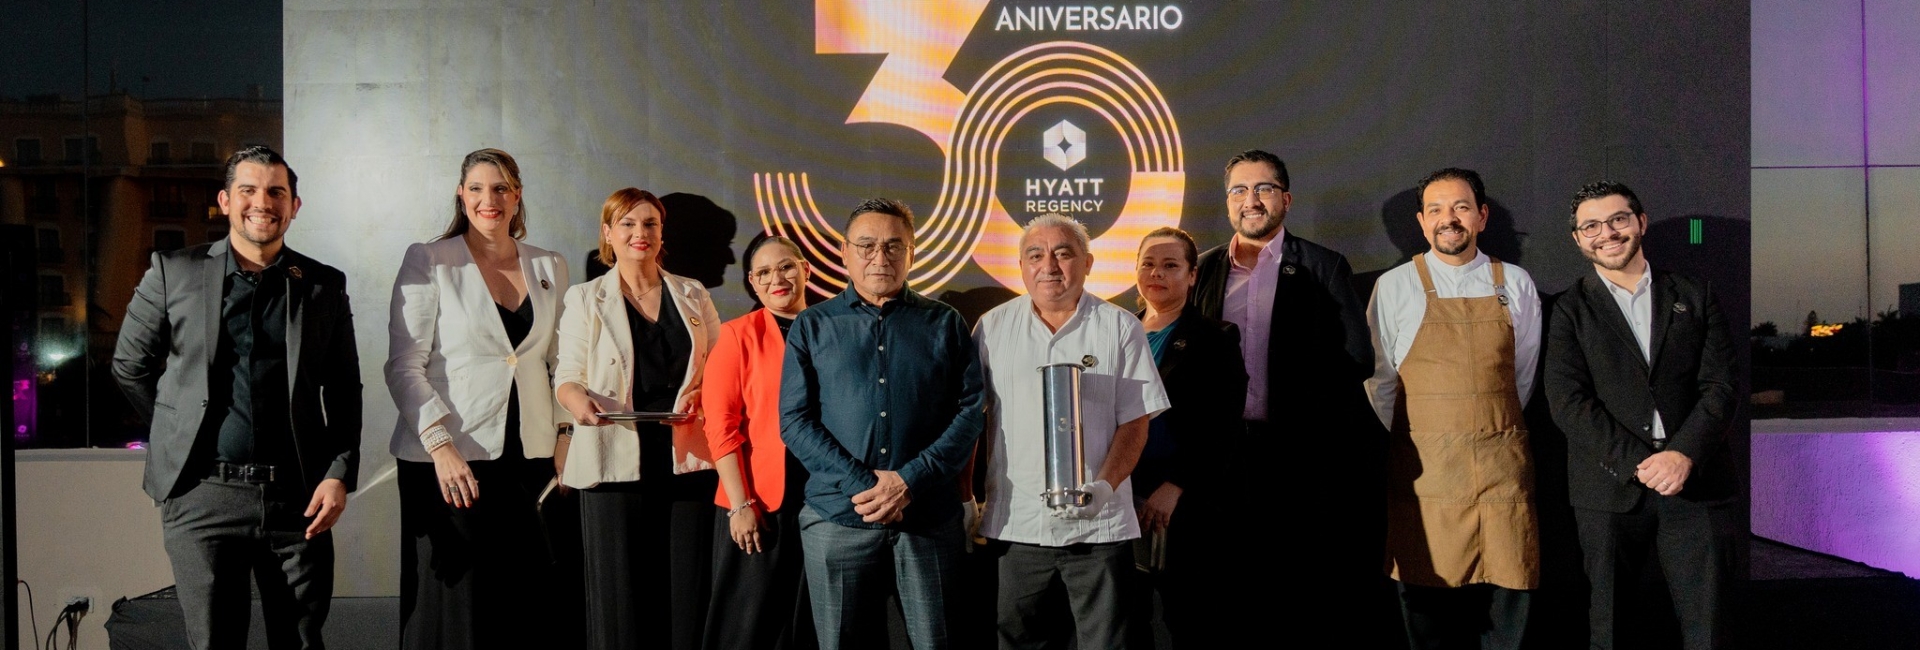 Celebremos Juntos 30 Años de Historia: Eventos Especiales para Nuestro Aniversario